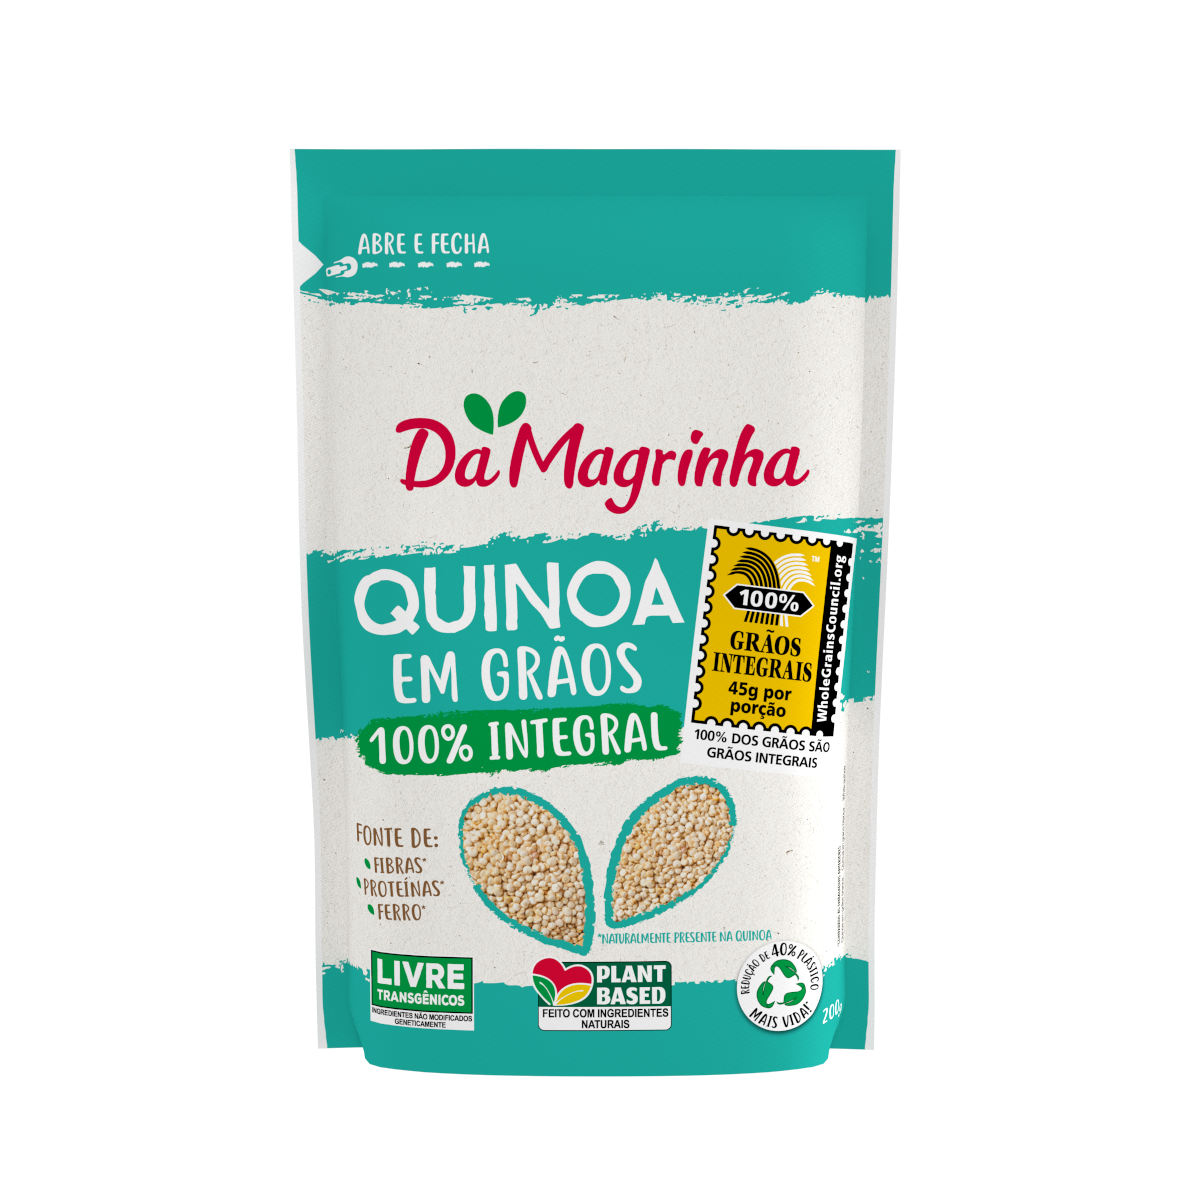 Quinoa em Grãos 100% Integral 200g/350g - Da Magrinha 100% INTEGRAL -  Alimentação Integral - Granolas, Cookies, Snacks e Complementos Alimentares